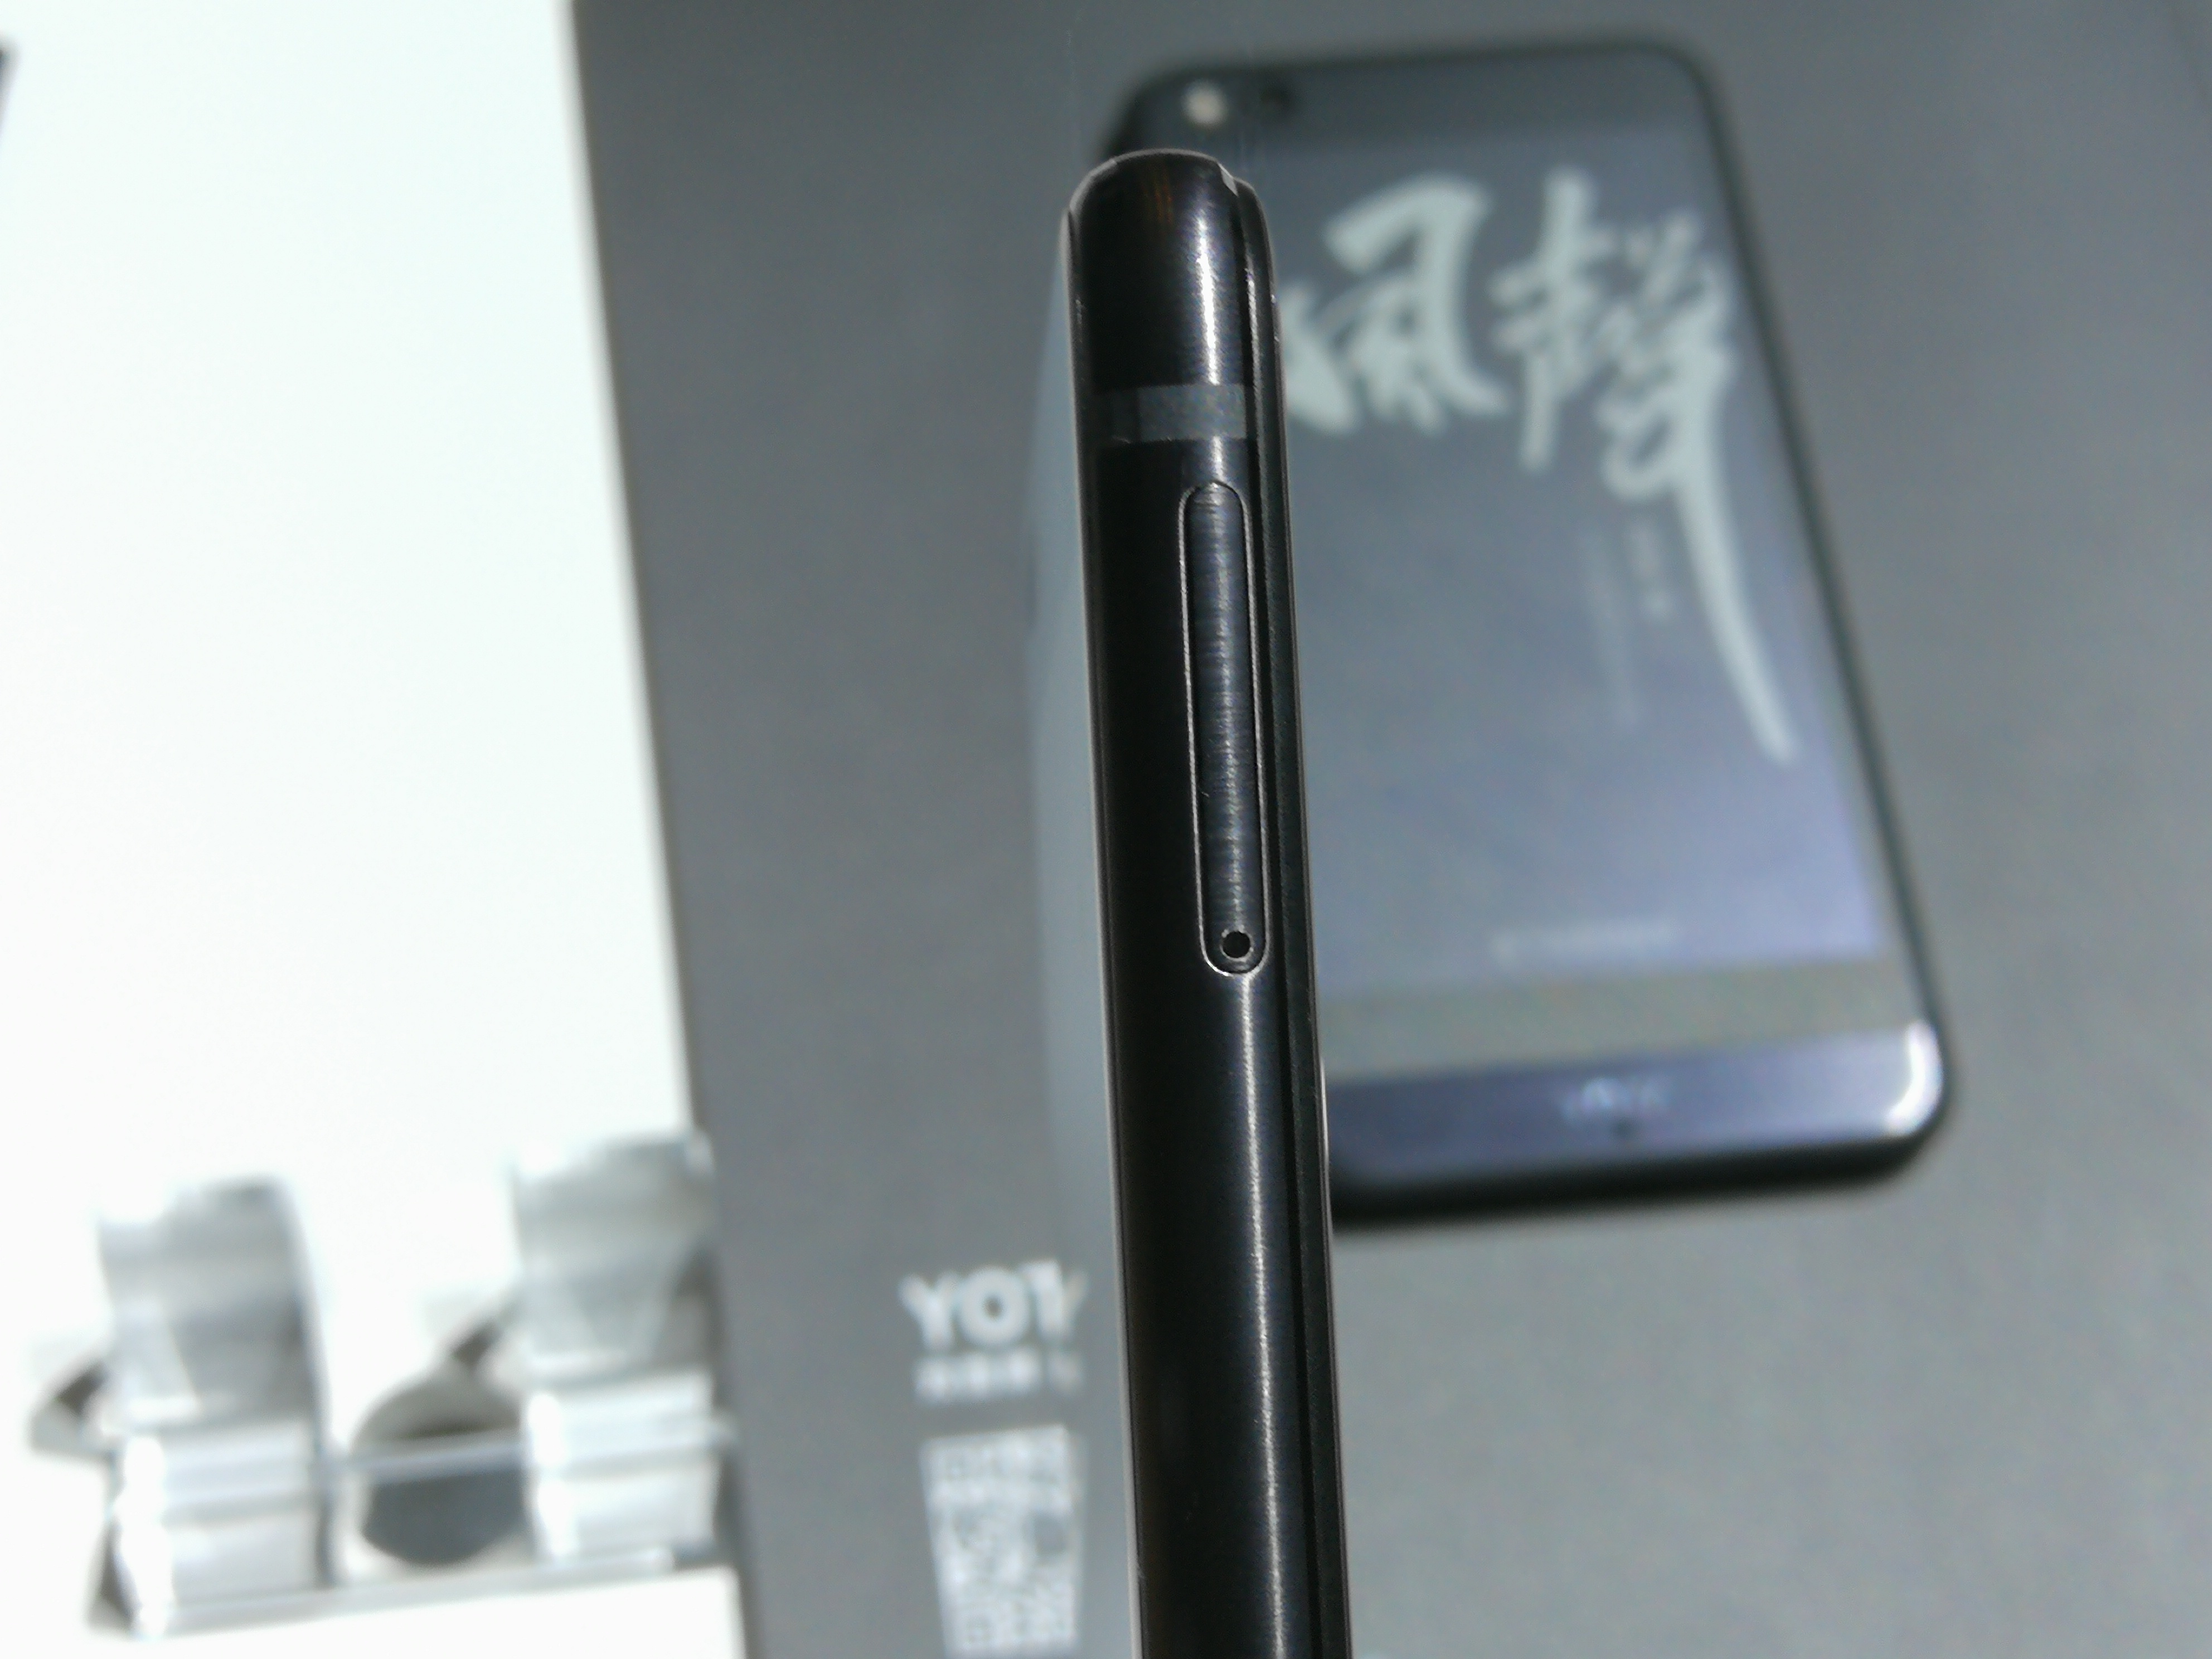 大显手机大全，普京视为国礼的墨水屏手机升级 YOTA3 公布最高 4299